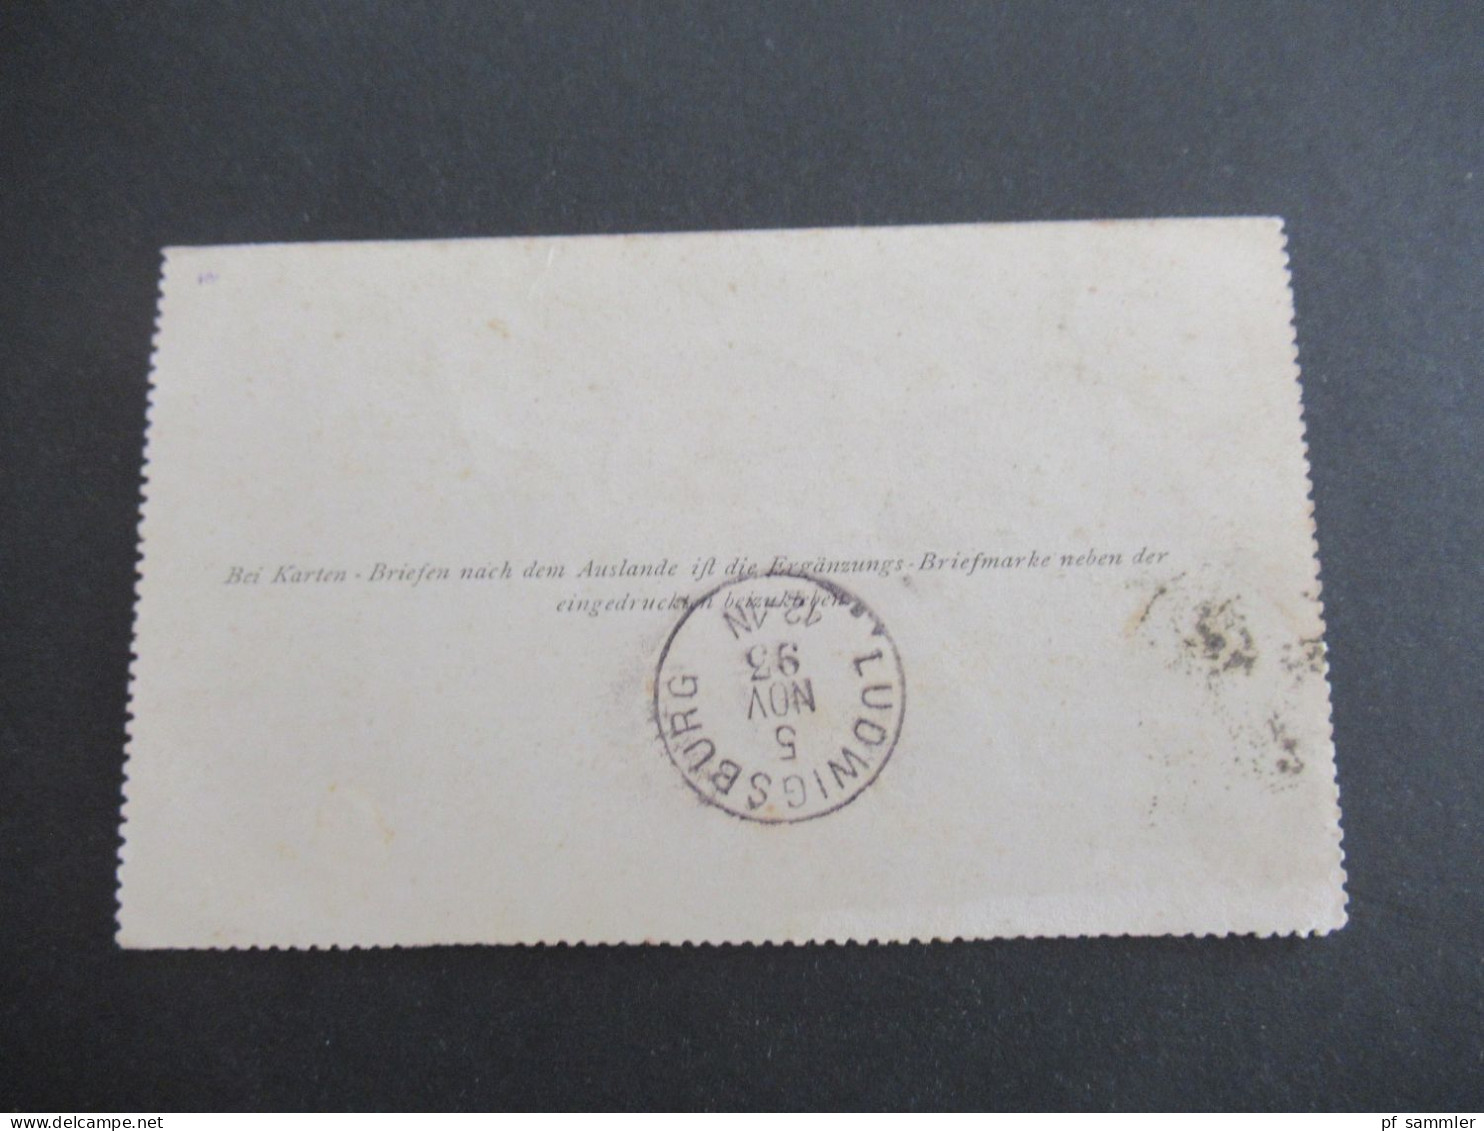 Österreich 1893 Kartenbrief 5 Kreuzer Mit Stempel K1 Schwechat Nach Ludwigsburg Württemberg Mit Ank. K1 Ludwigsburg - Postbladen